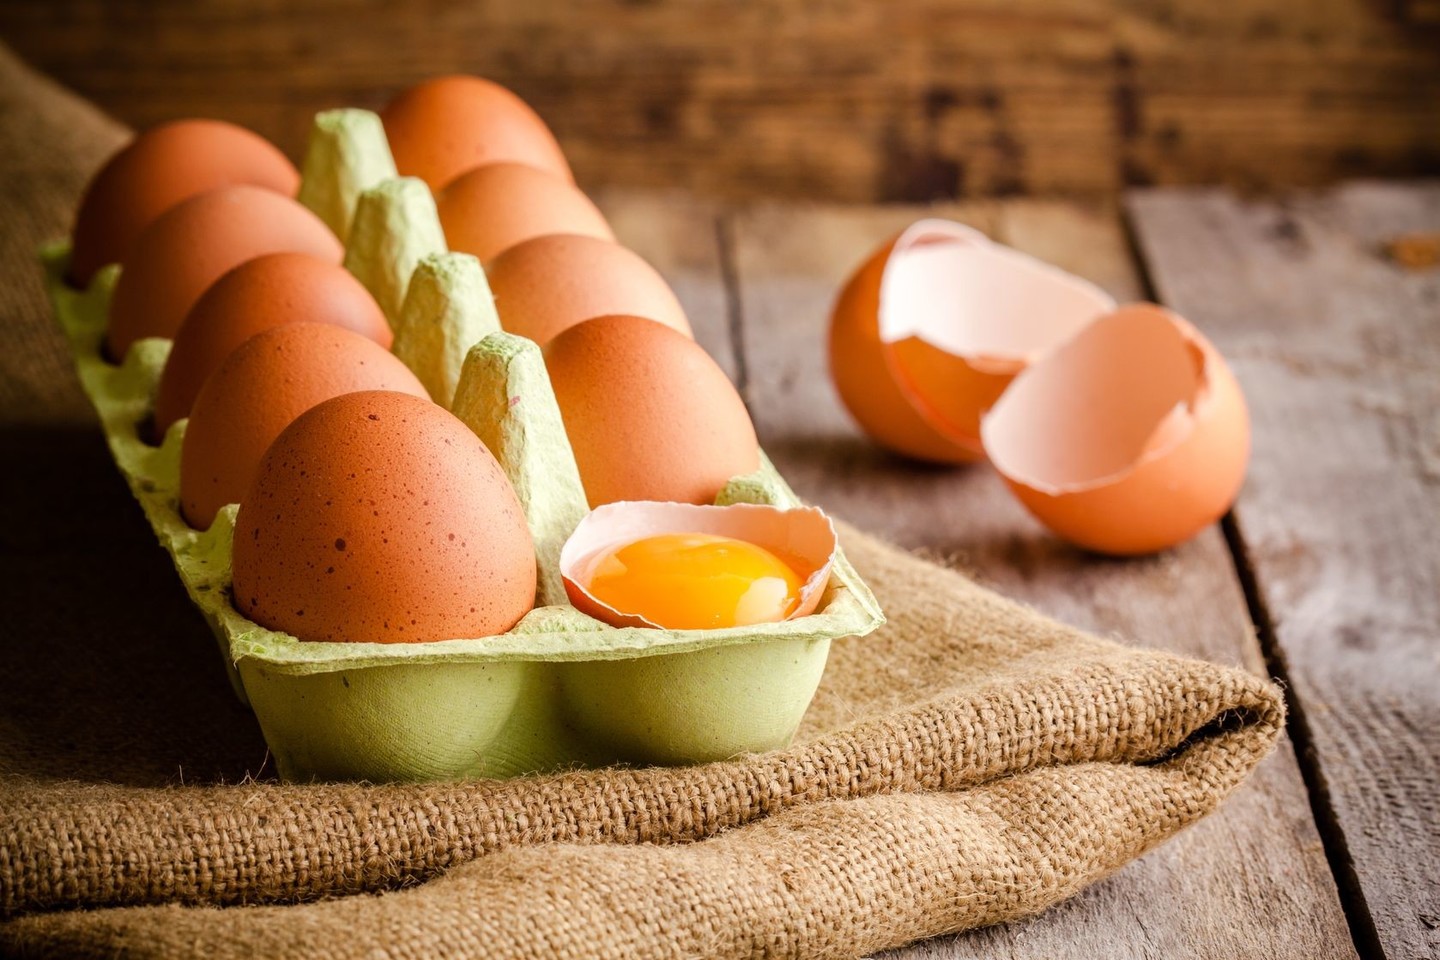  Kiaušiniai, riešutai, avokadai – visi šie produktai padeda palaikyti sotumo jausmą.<br> 123rf.com nuotr.